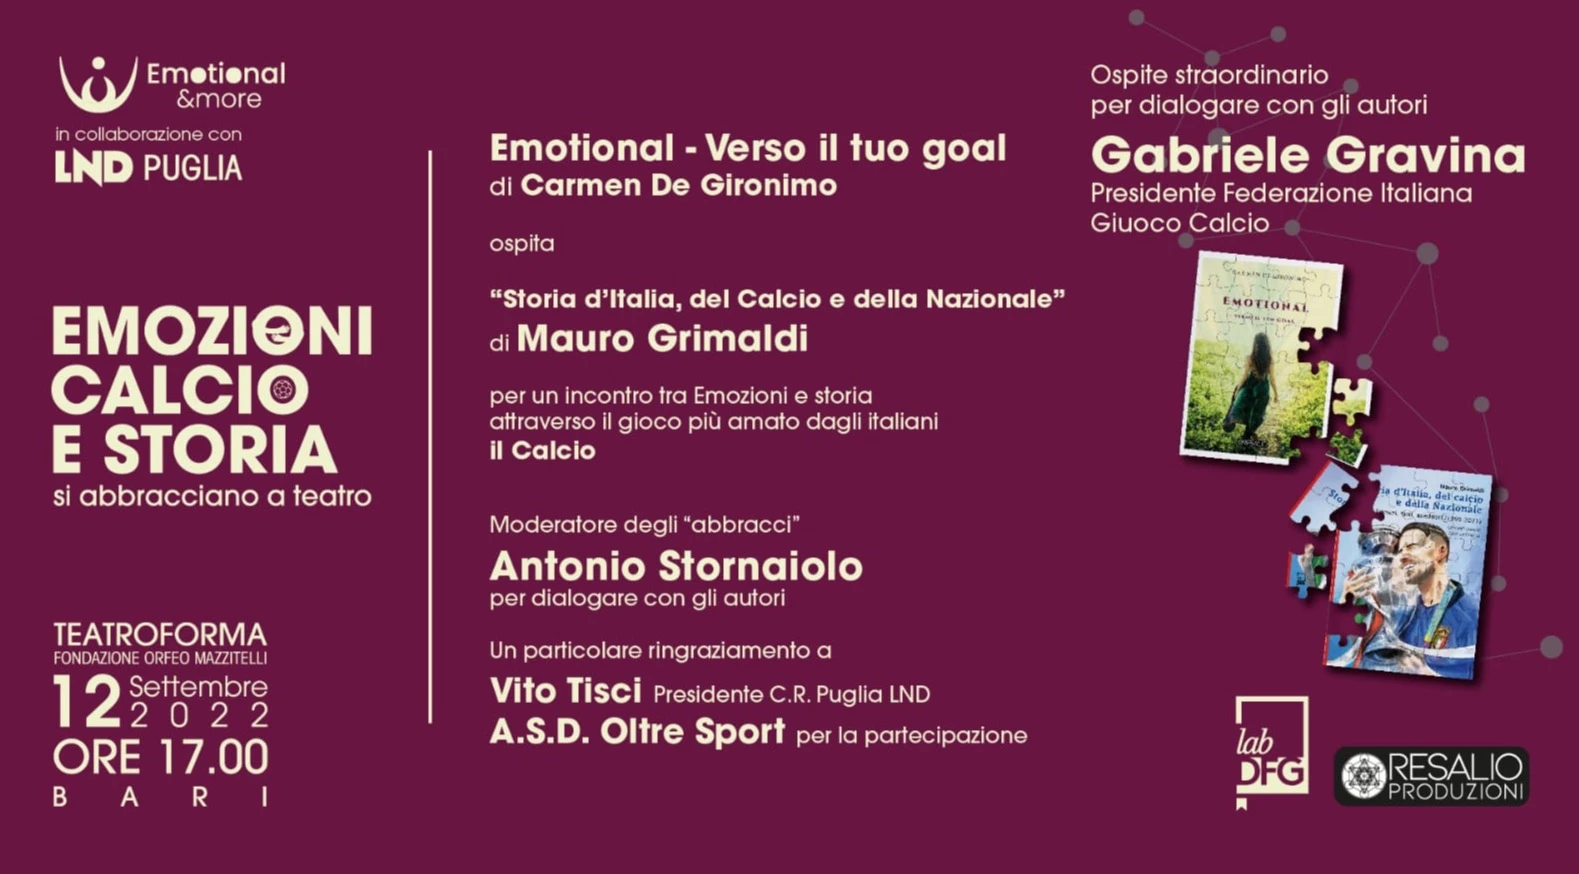 Emozioni, calcio e storia si abbracciano nel Teatro Forma di Bari il 12 settembre alle 17.00